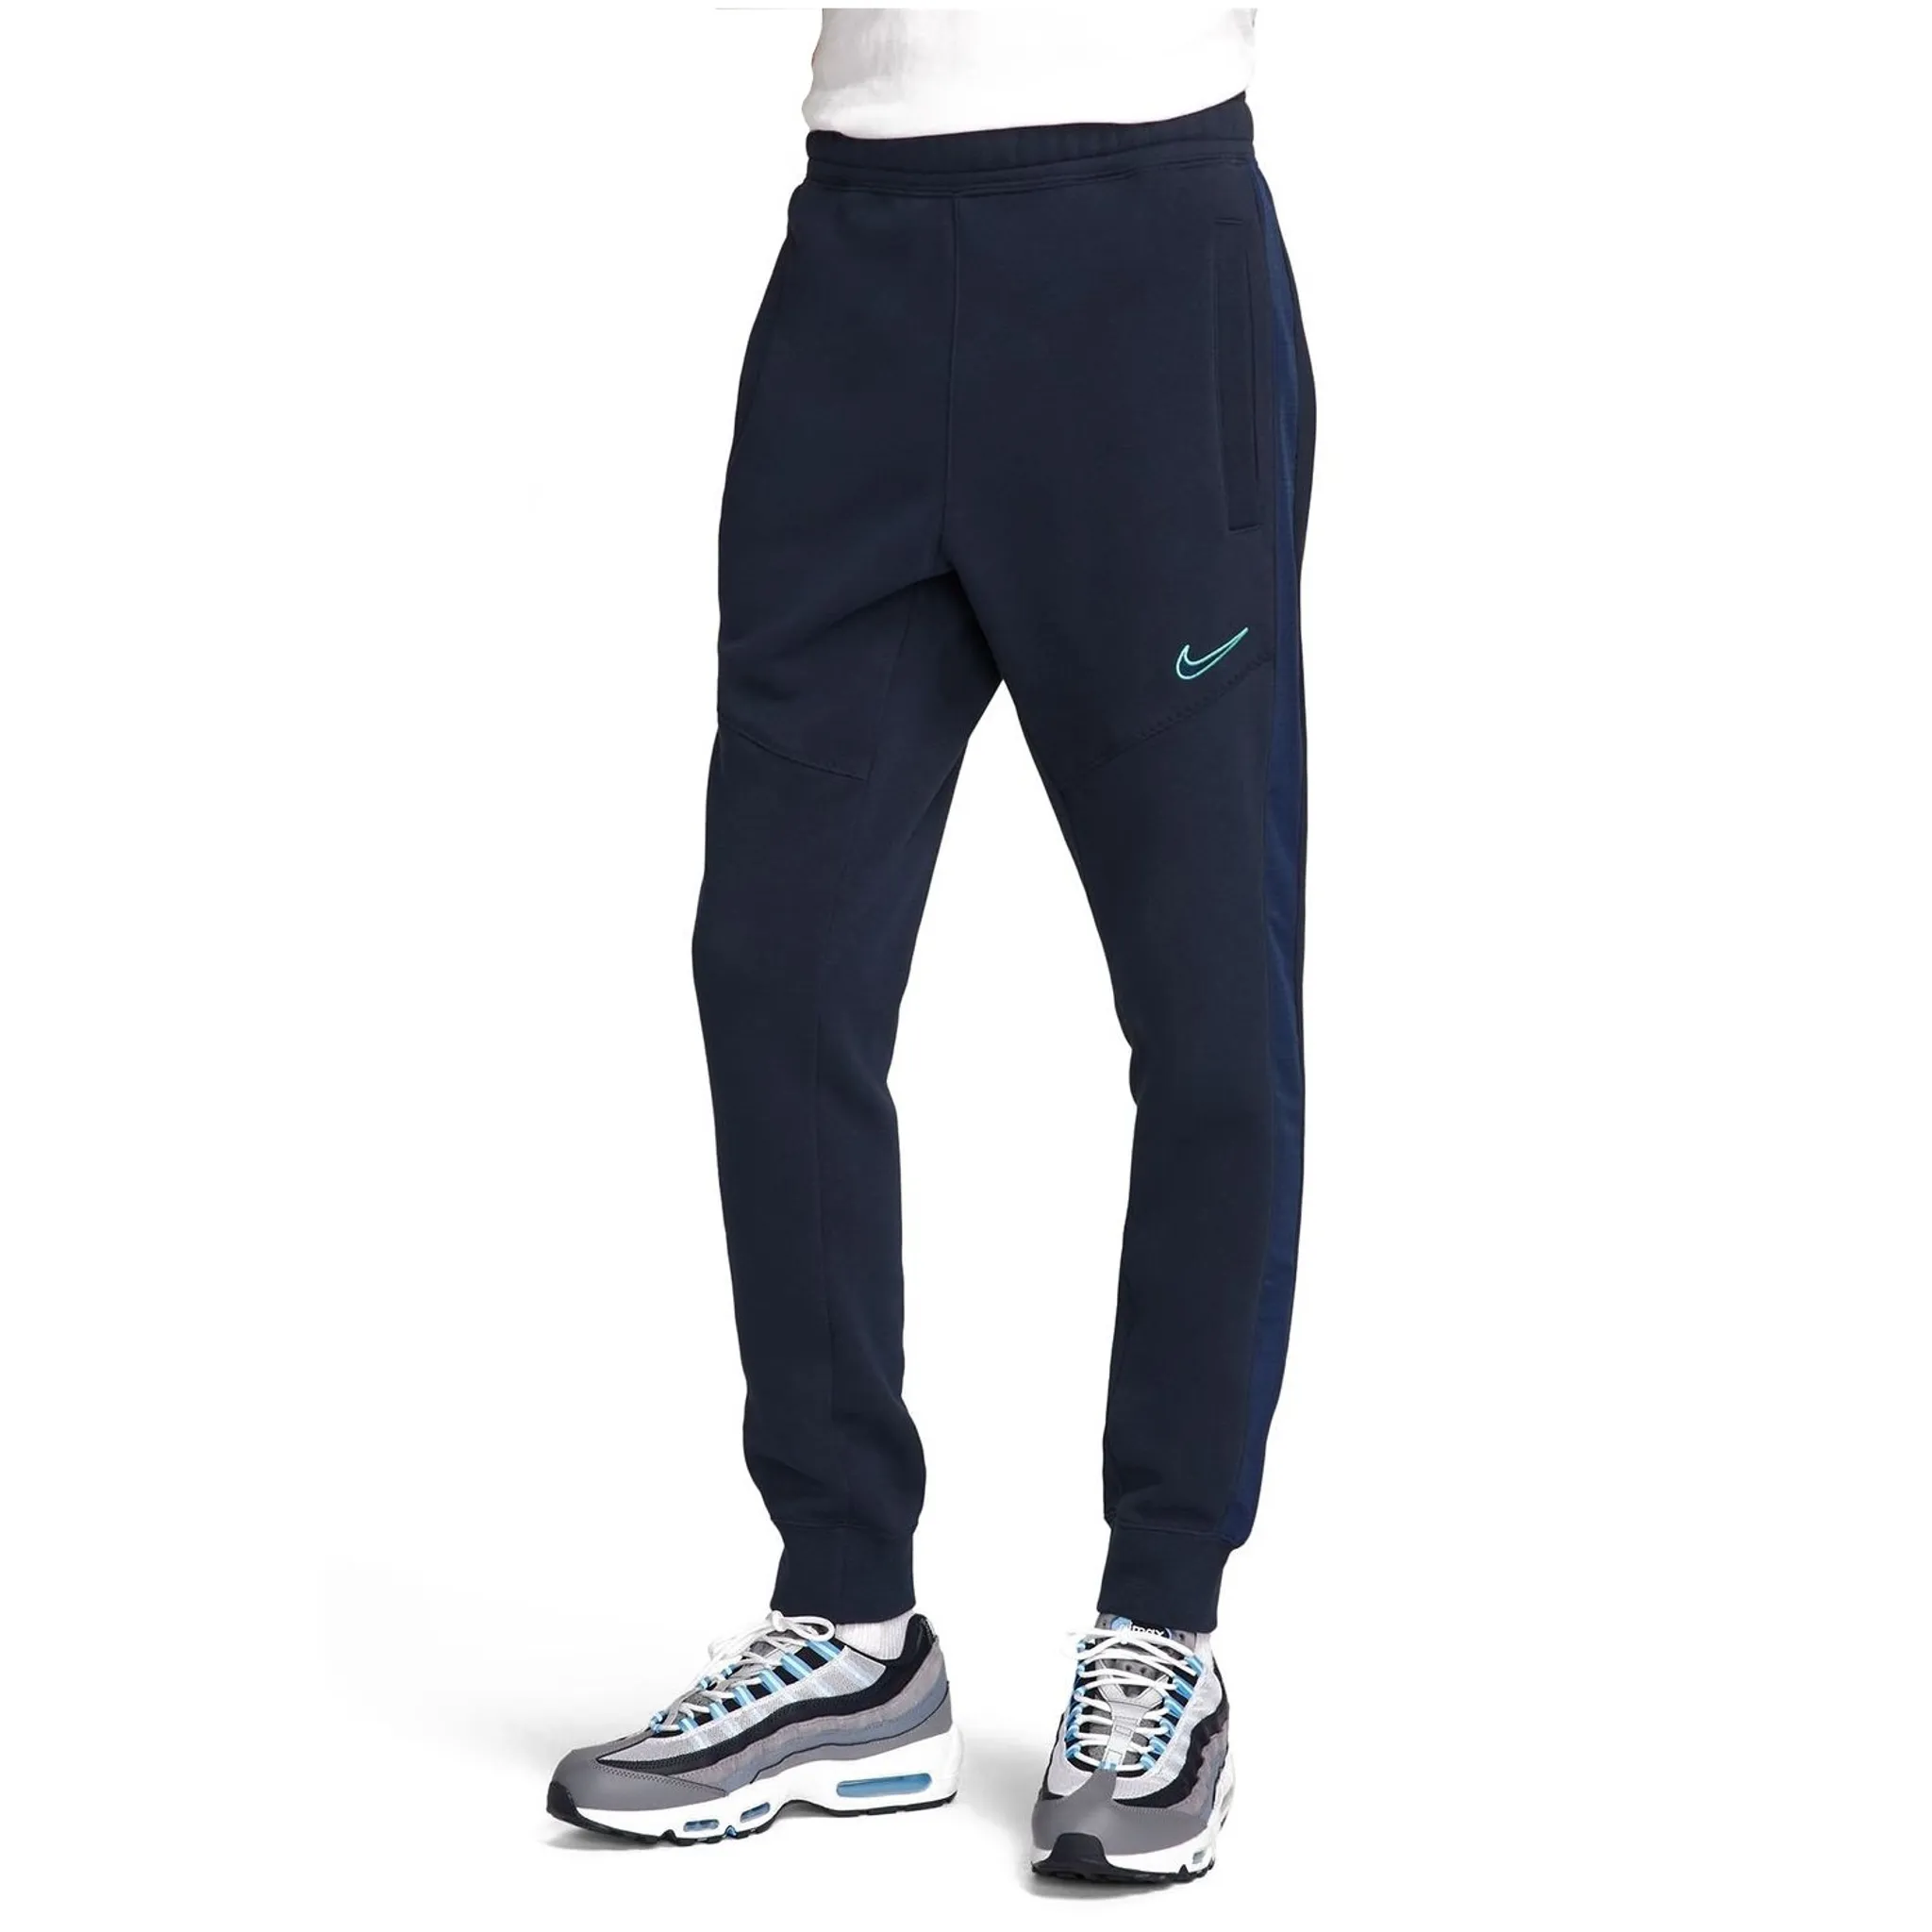 Fleeceinnenseite, Herren mit Nike Jogginghose